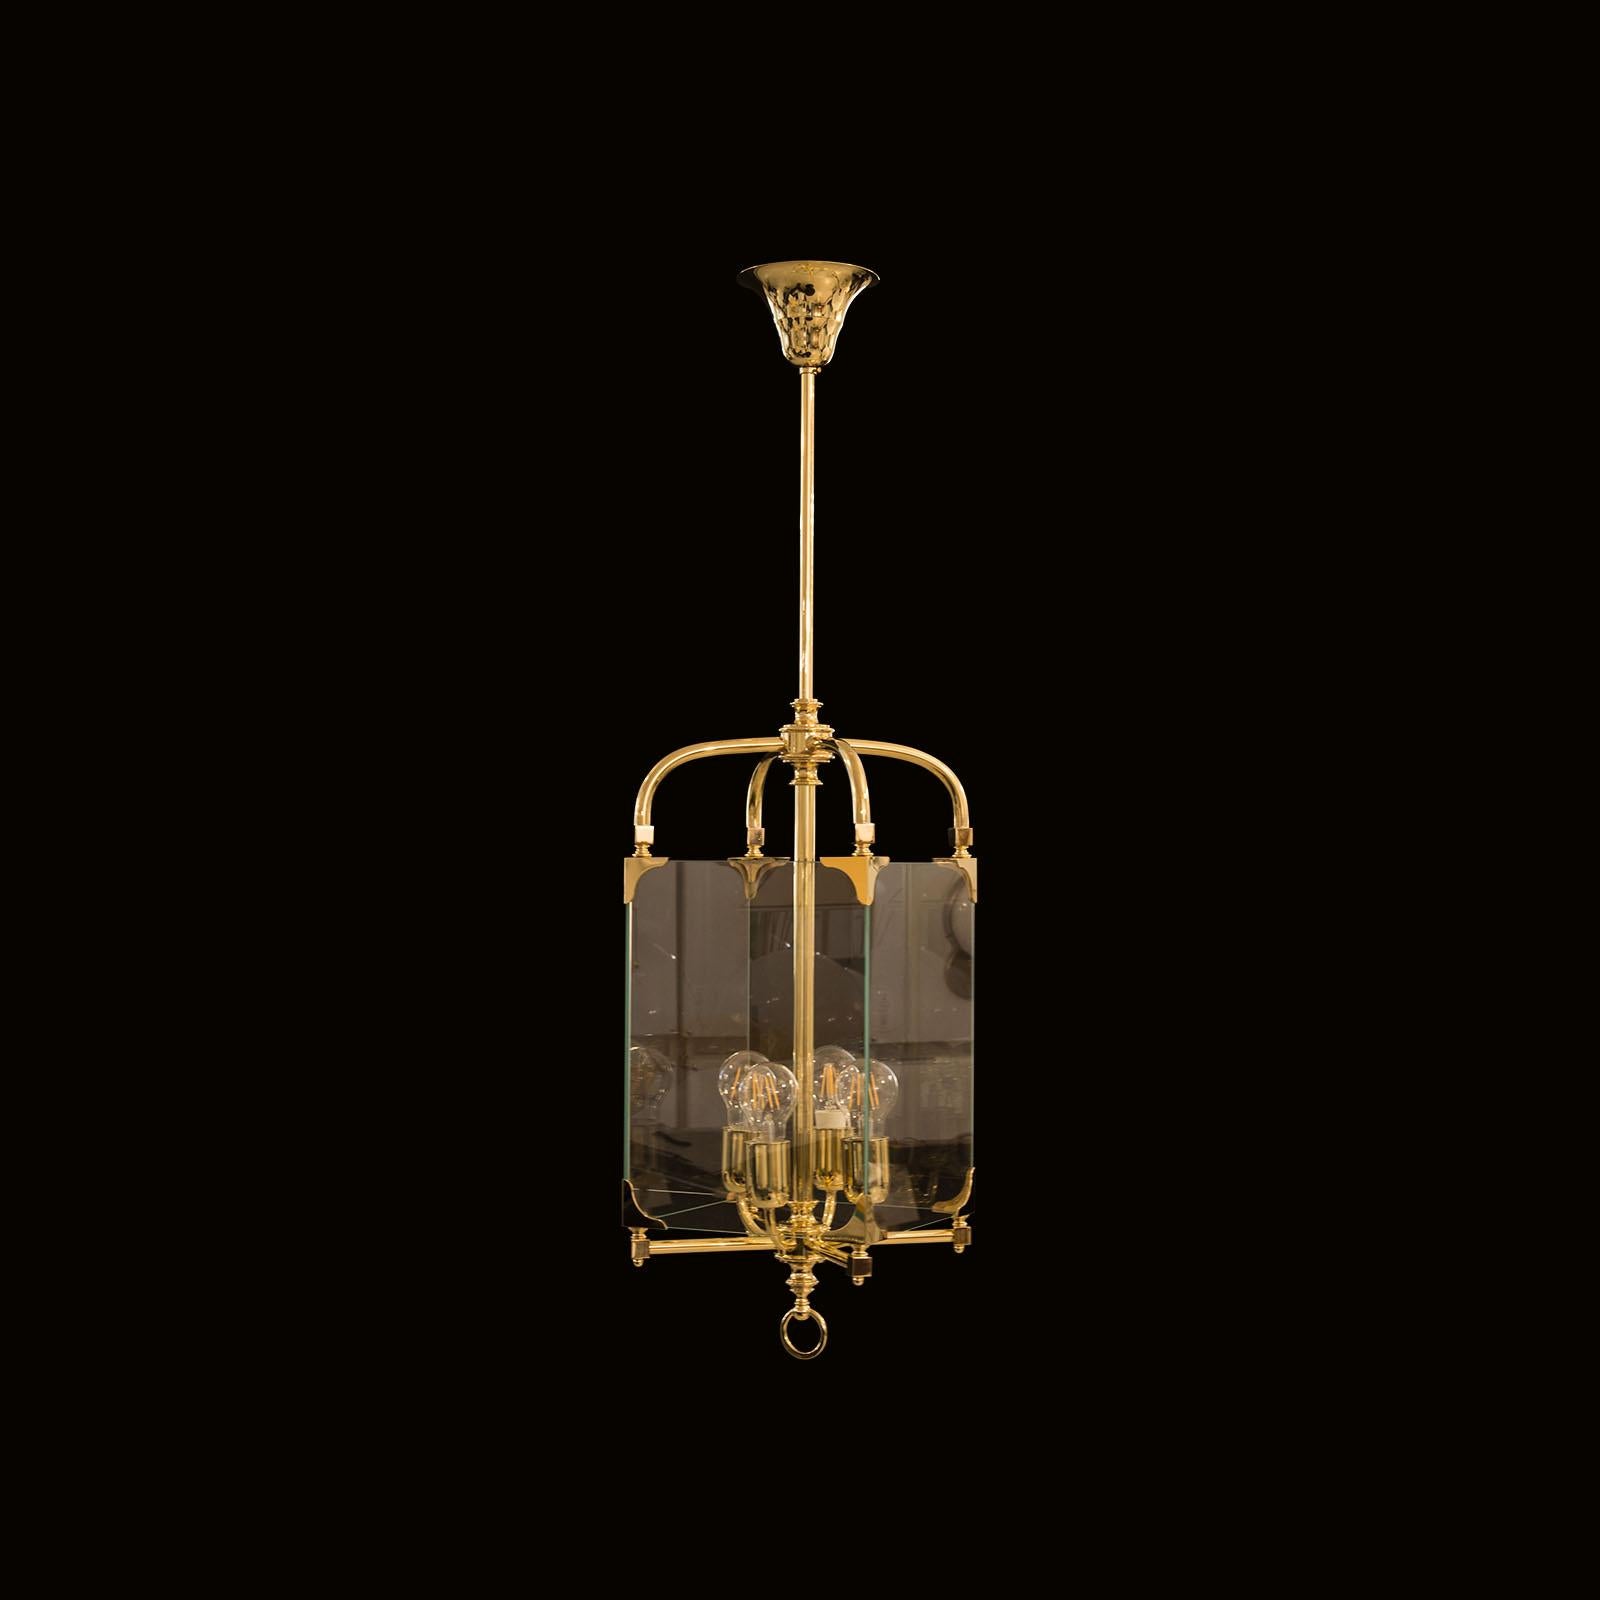 Adolf Loos Secession Jugendstil Glass and Brass Lantern Chandelier Re-Edition For Sale 4